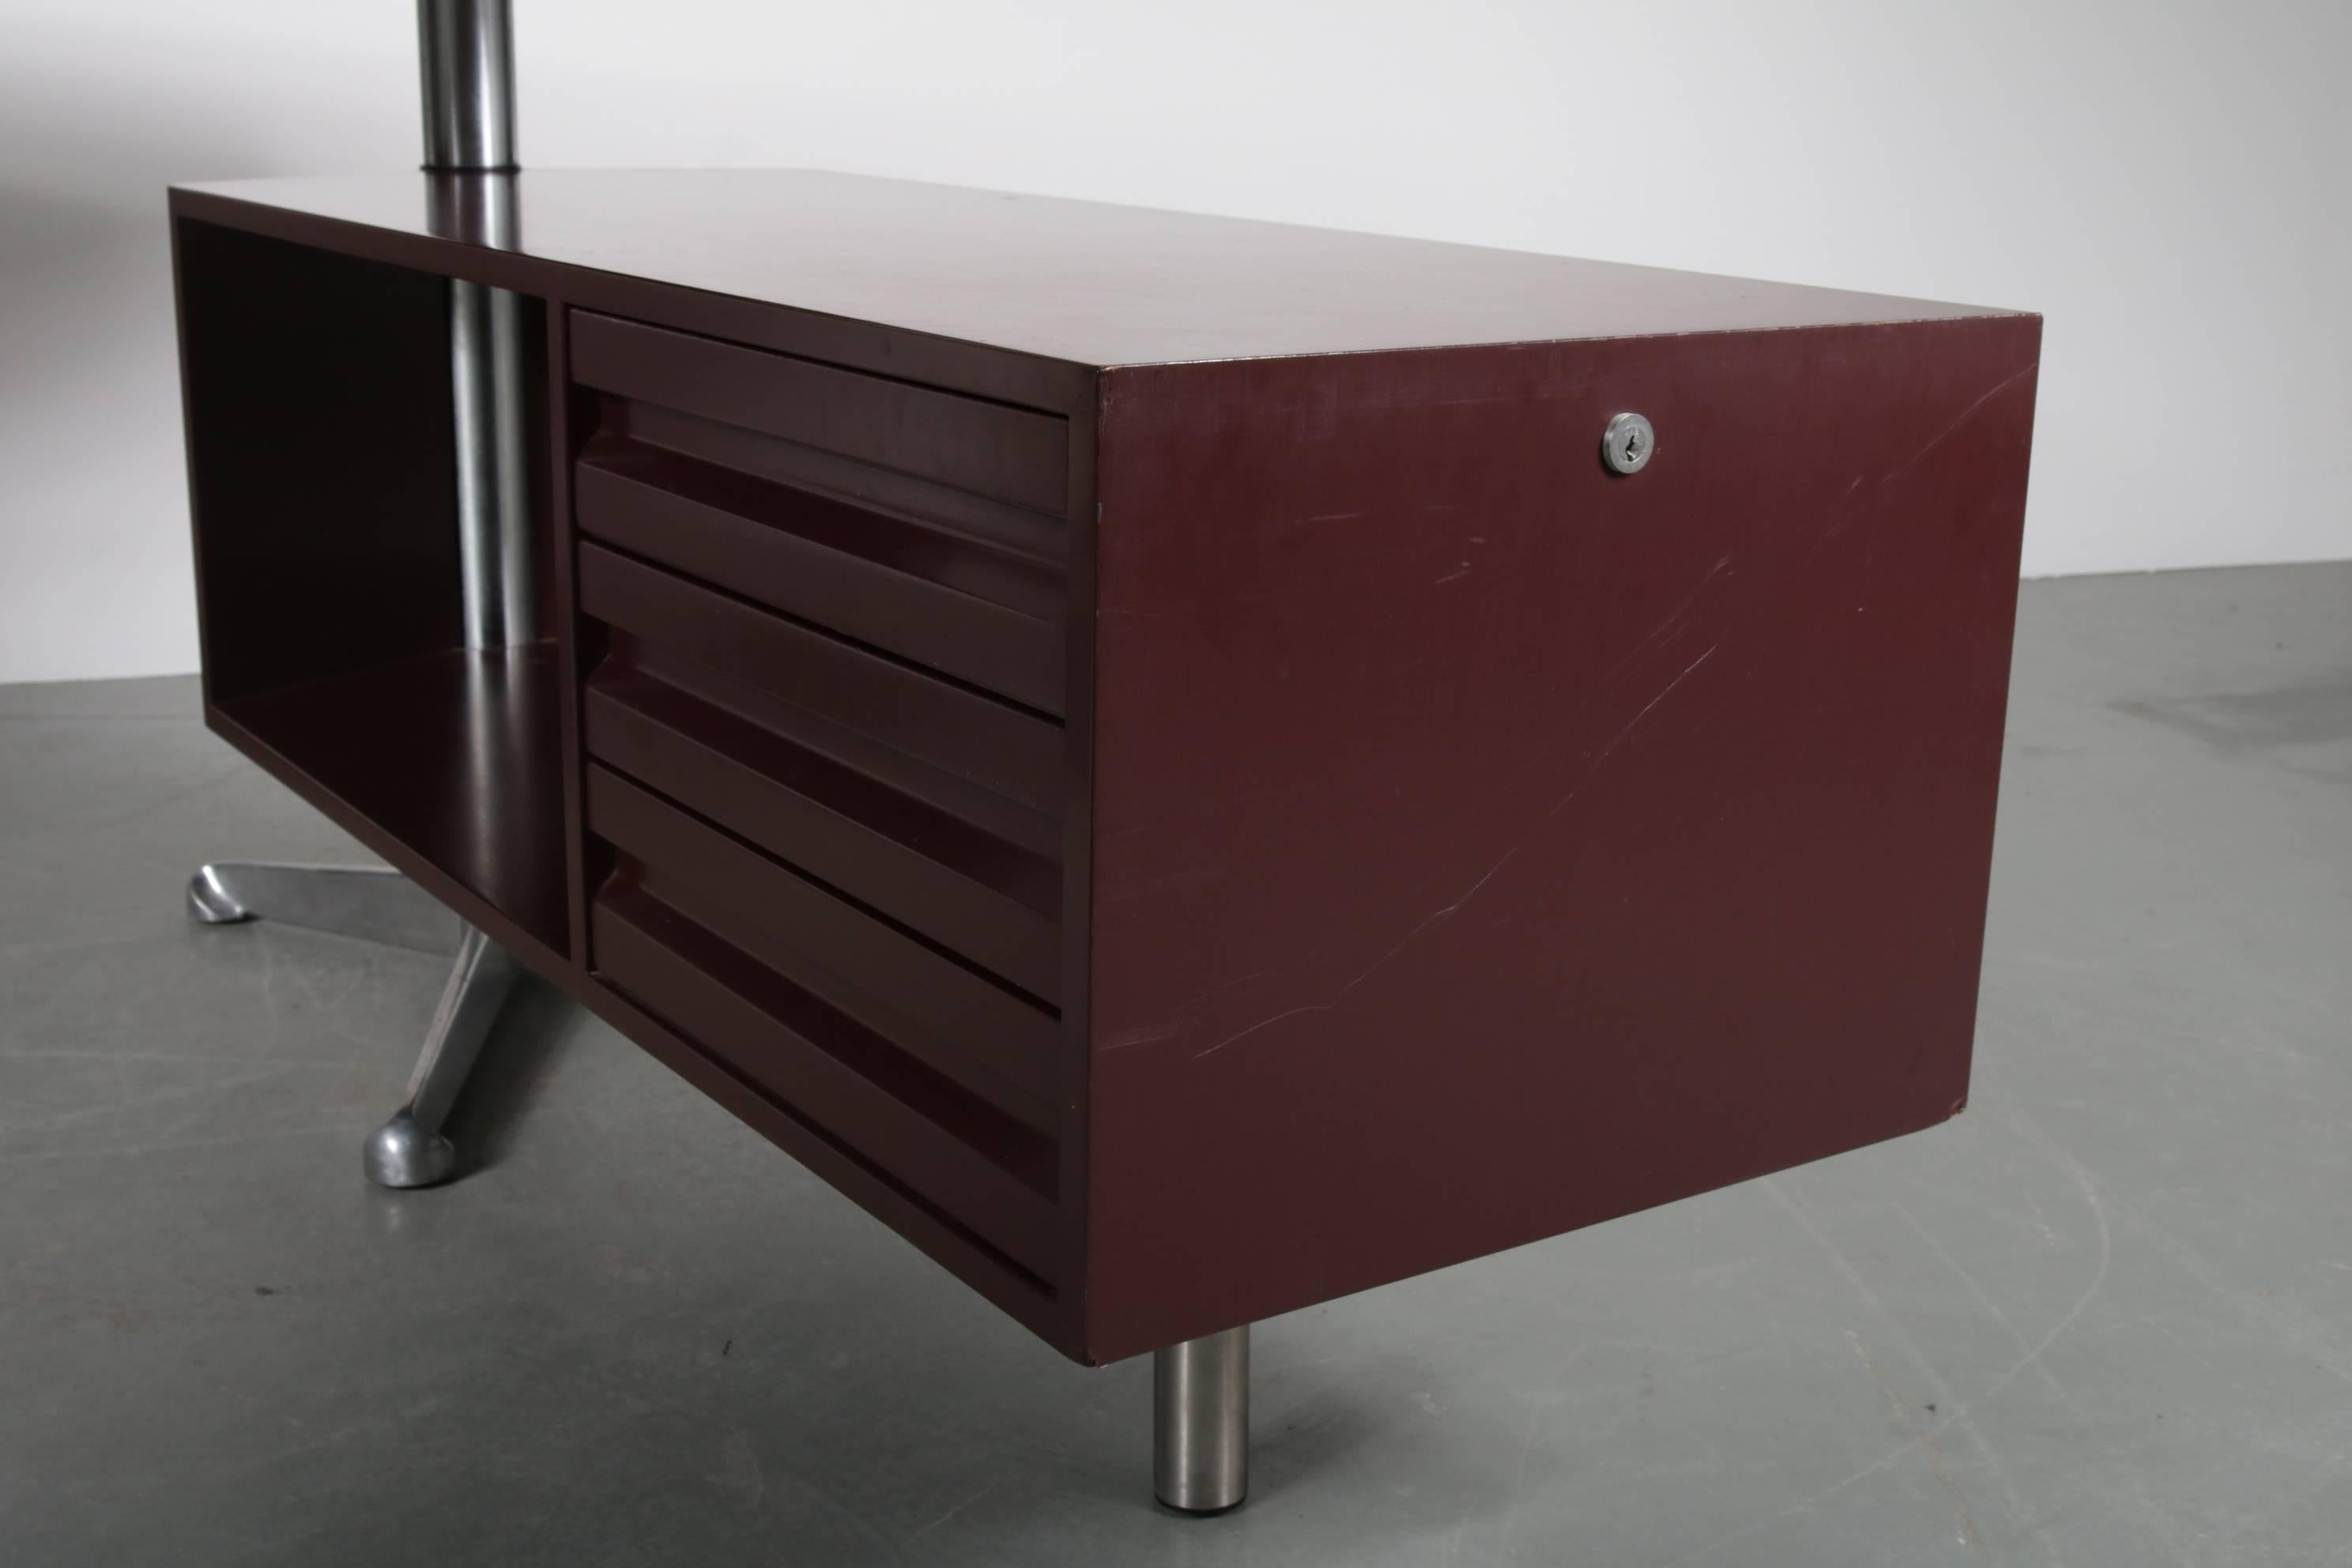 Metal Executive Desk by Osvaldo Borsani for Tecno Milano, Italy, 1950s For Sale